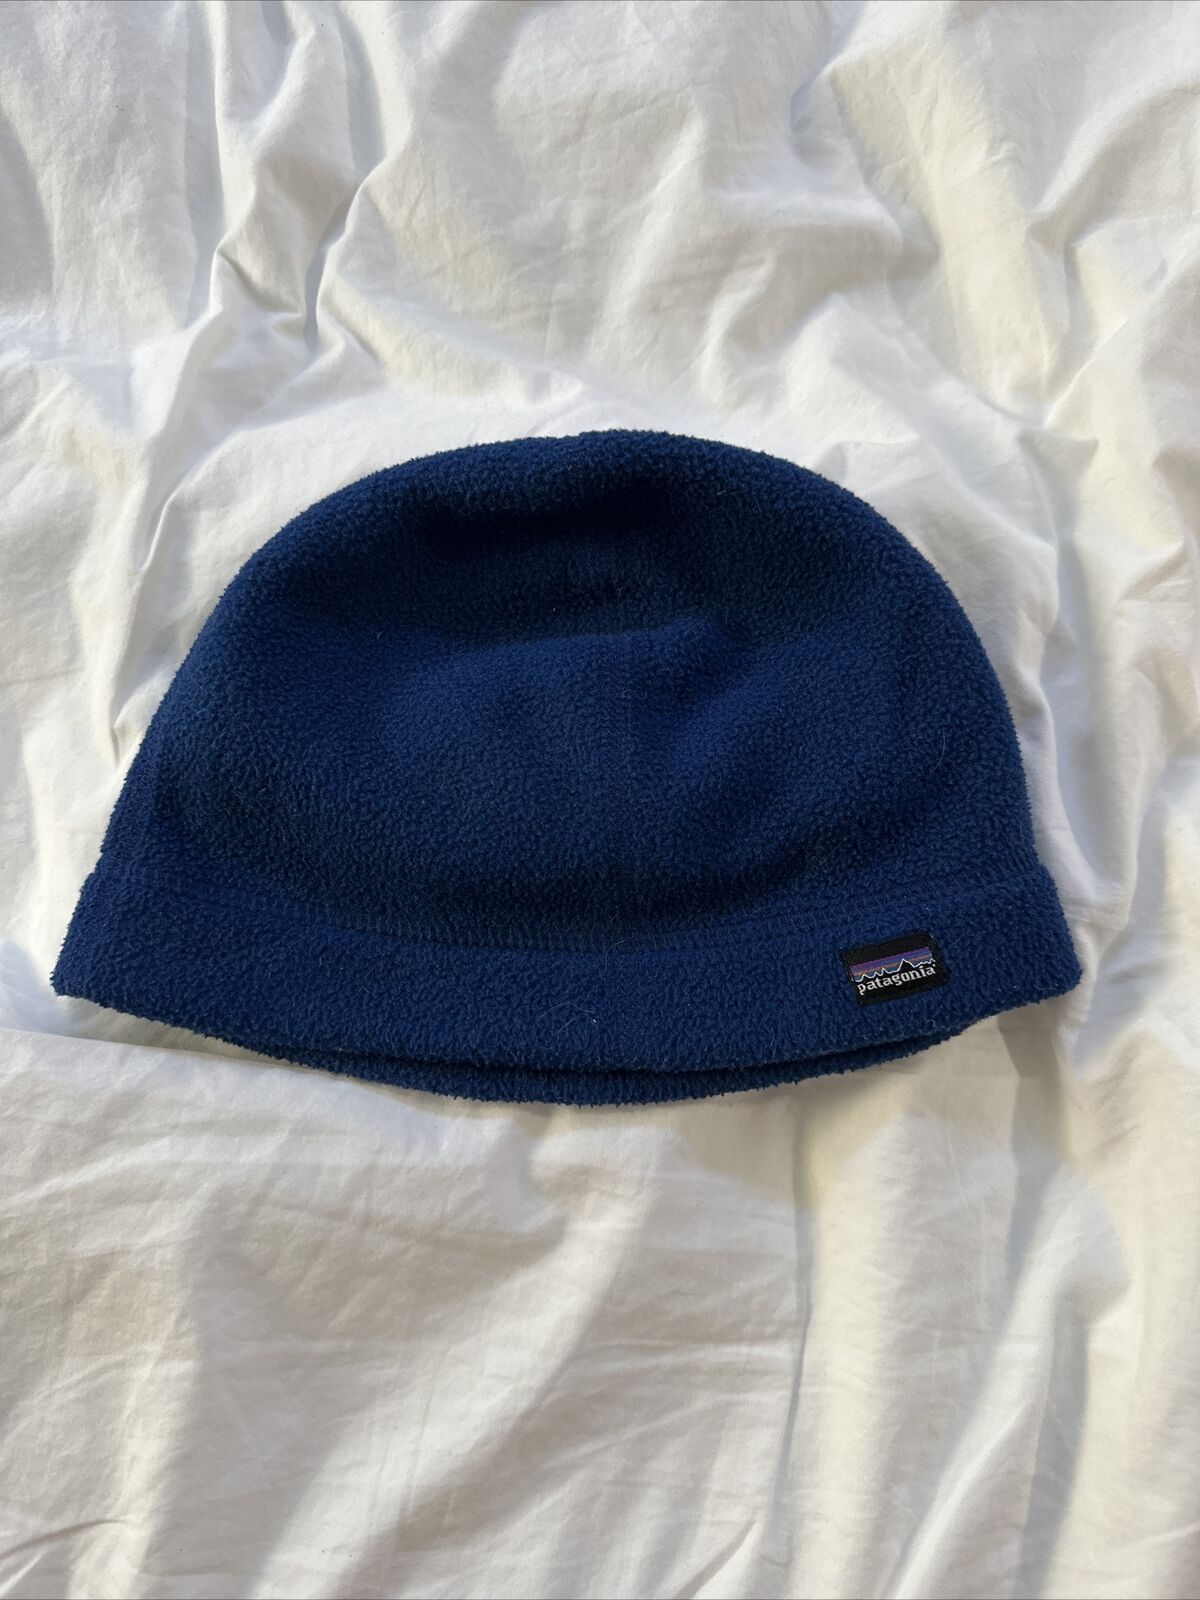 Patagonia Blue Kids Fleece Hat Size Medium M